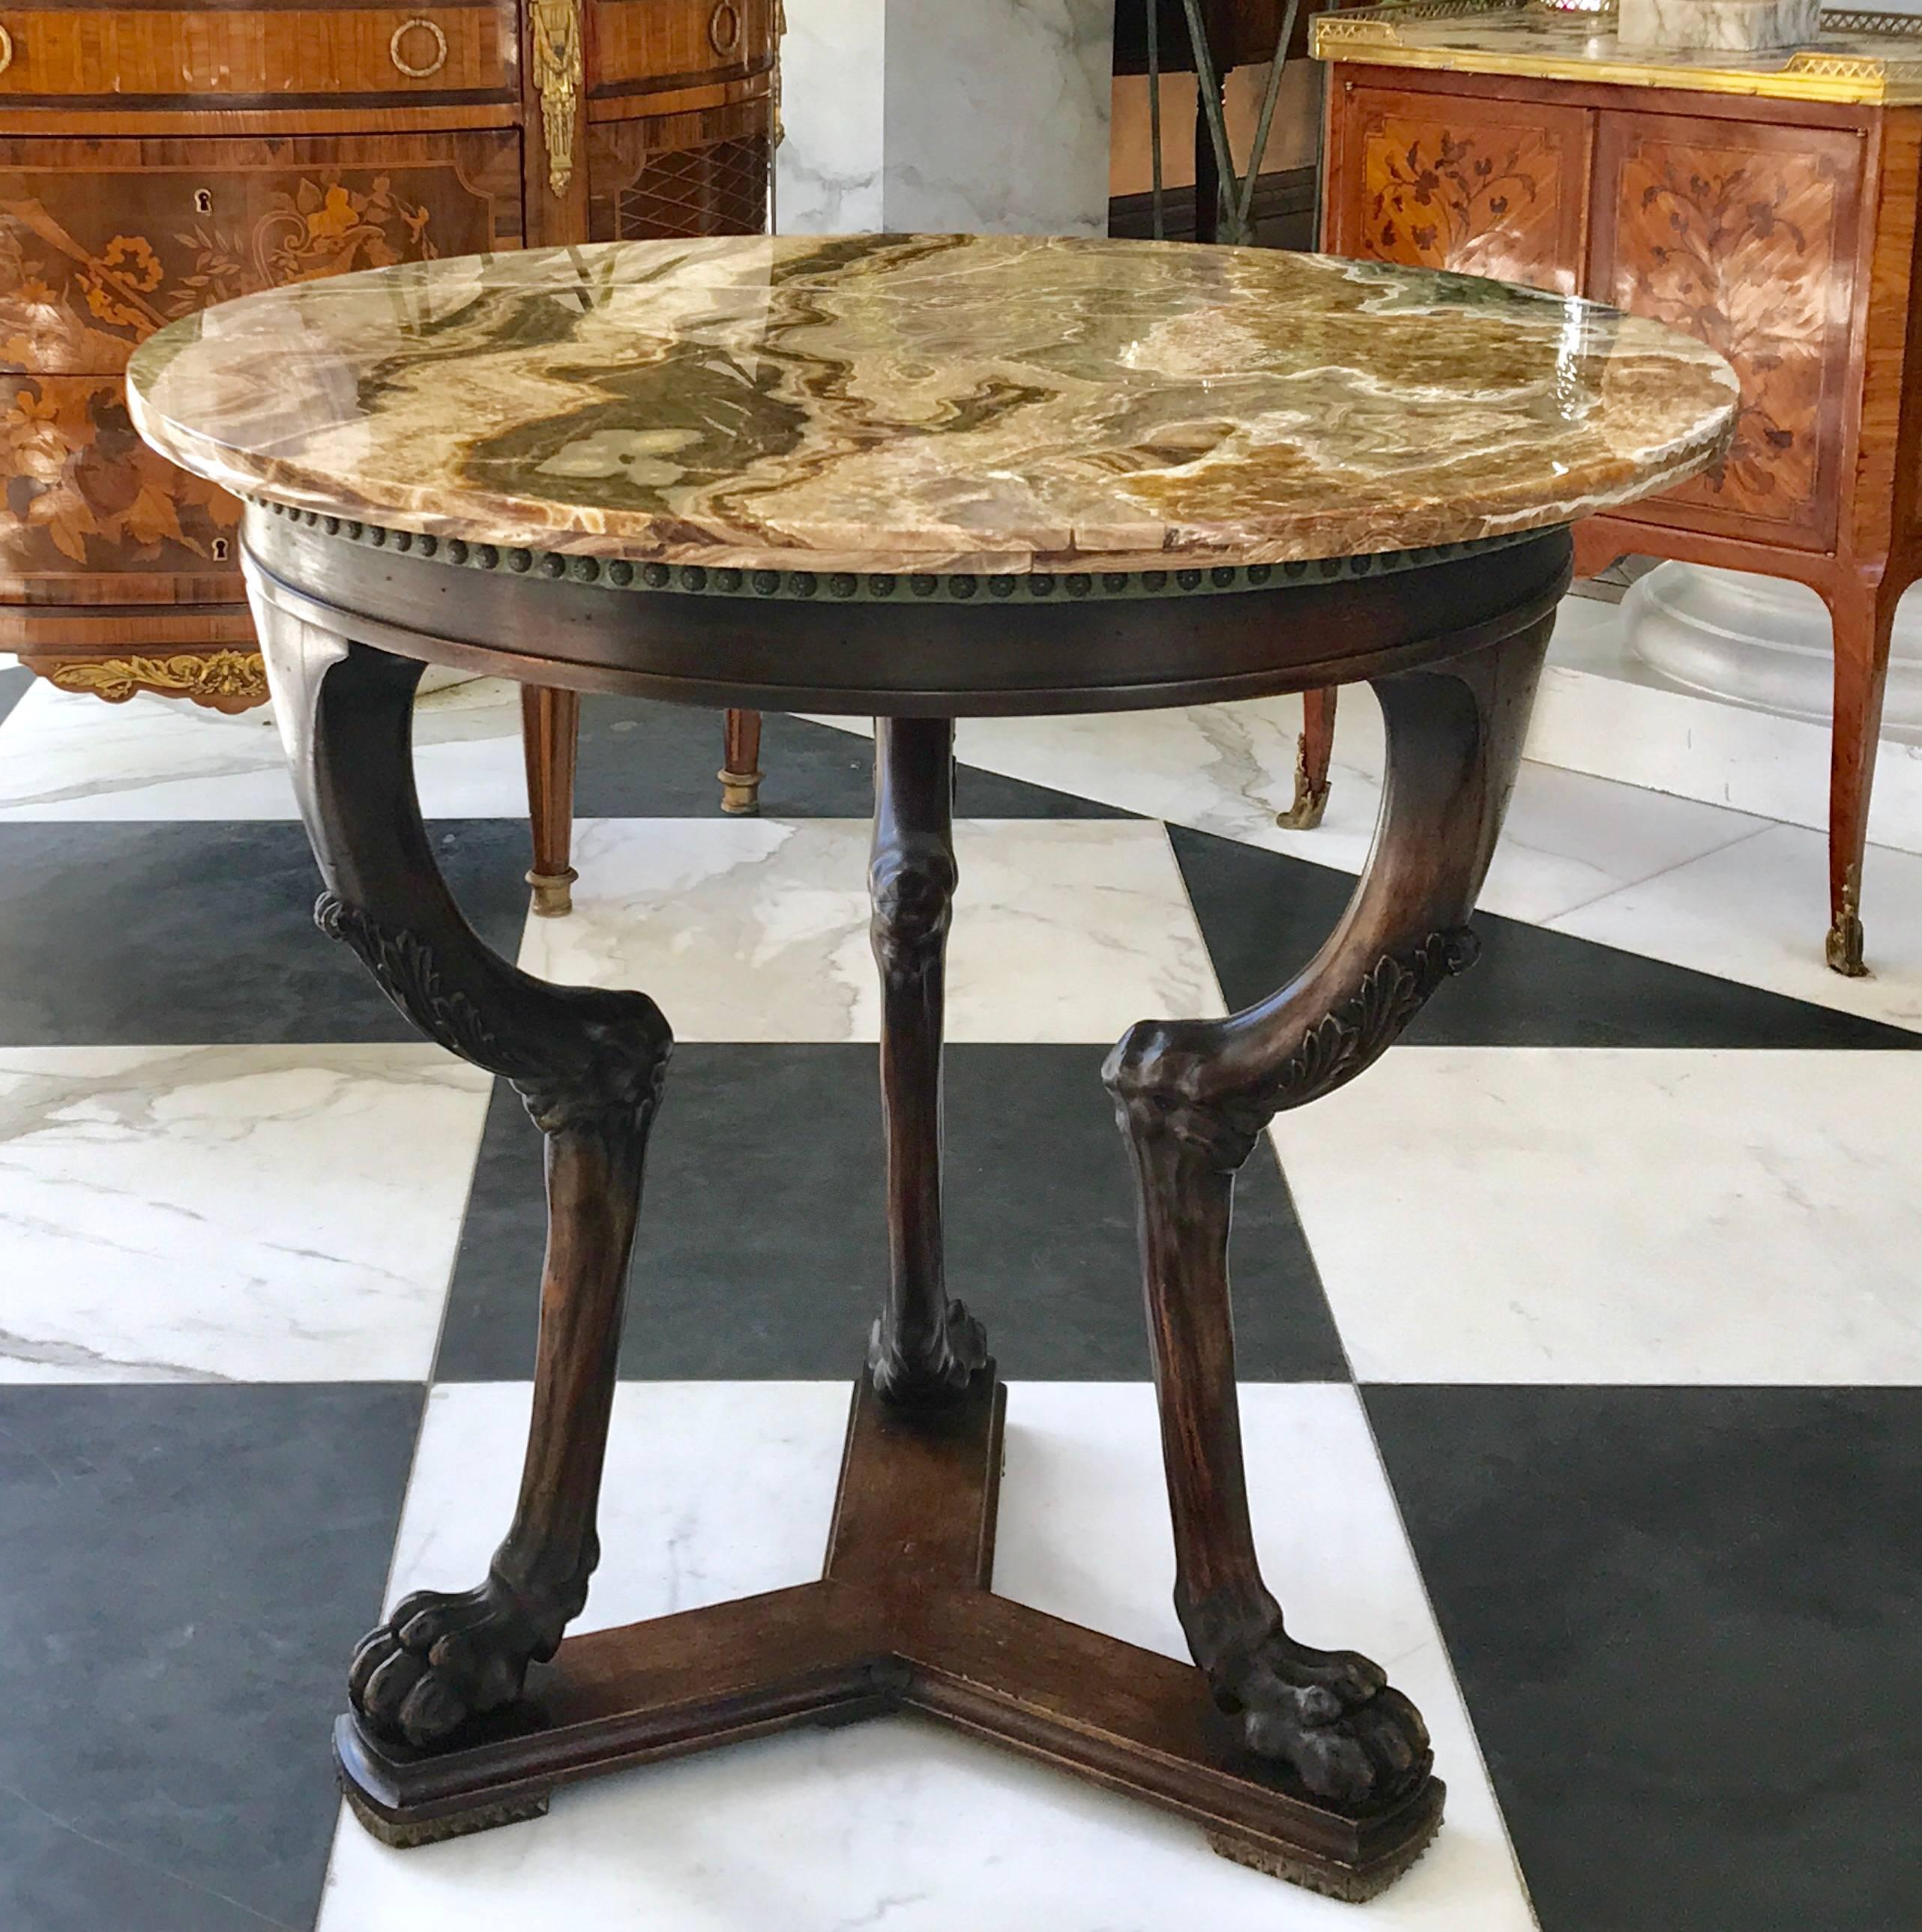 Cette extraordinaire table d'appoint néoclassique est sculptée à la main au milieu du XIXe siècle en Italie. Fabriqué en noyer avec un plateau en onyx d'une rare profondeur qui attirera tous les regards.
L'élégance de cette table est remarquable !